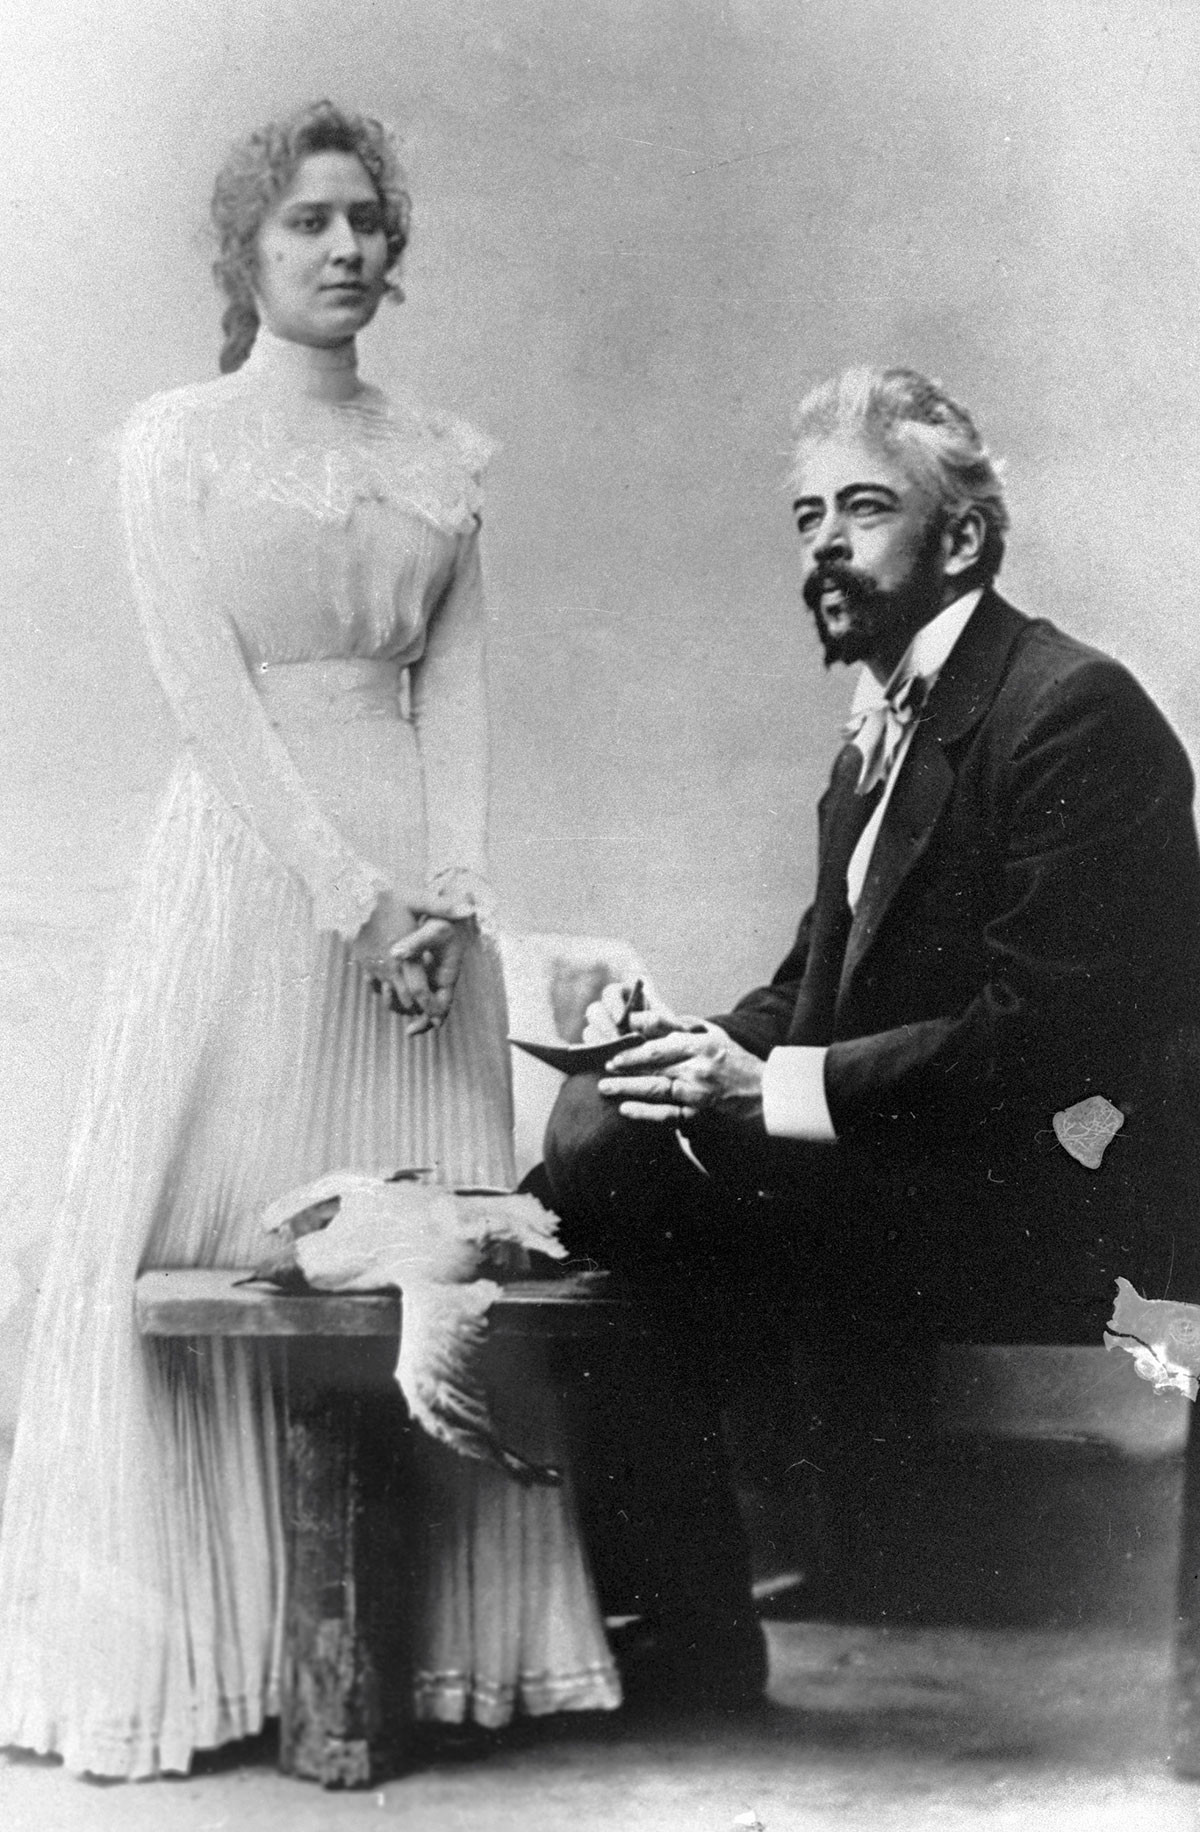 Marija Roksanova nei panni di Nina e Konstantin Stanislavskij nel ruolo di Trigorin nella rappresentazione 